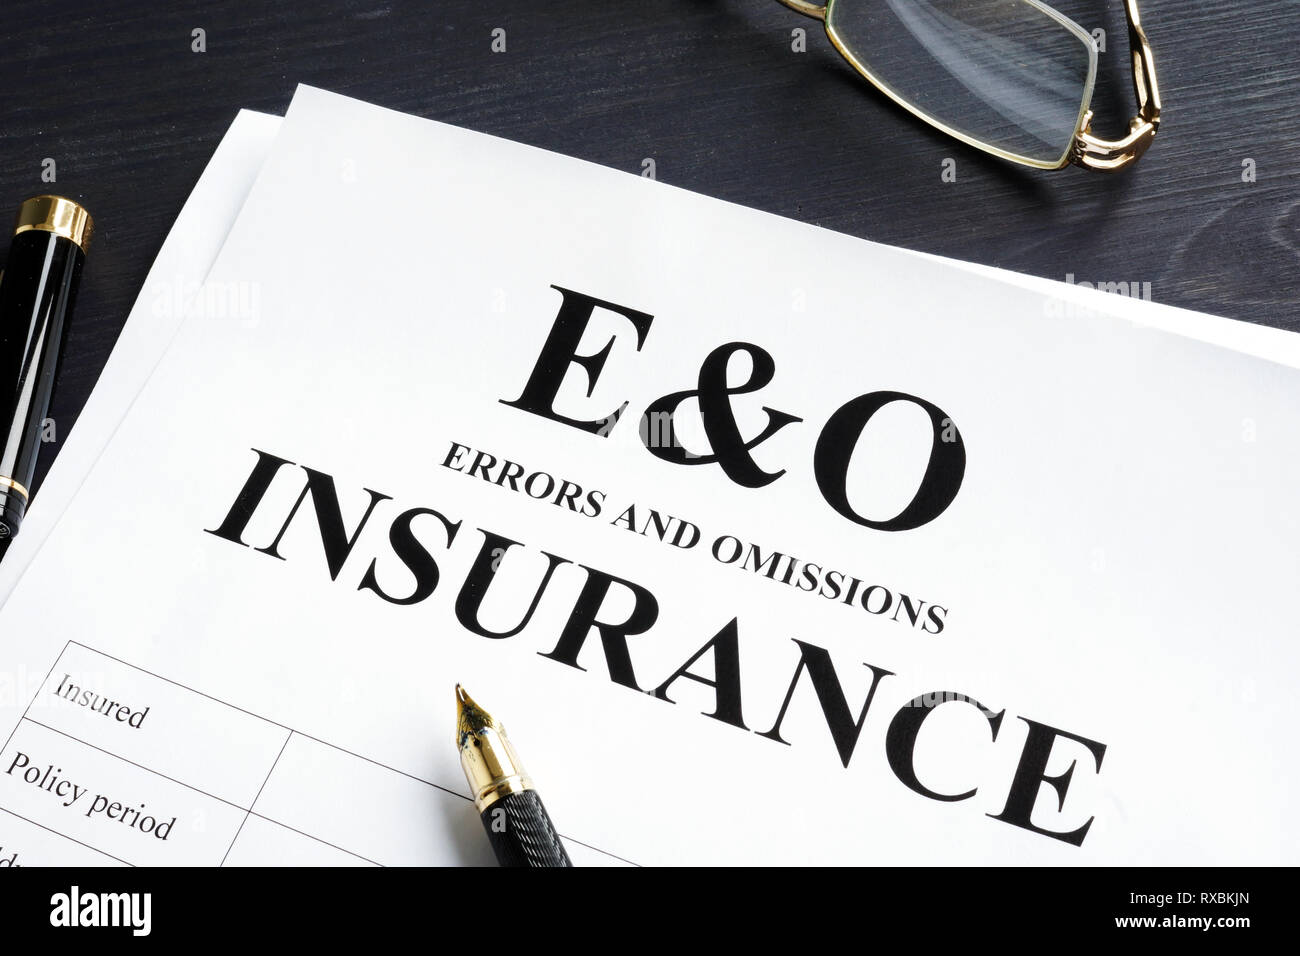 Assurance erreurs et omissions E&O formulaire. La responsabilité professionnelle. Banque D'Images